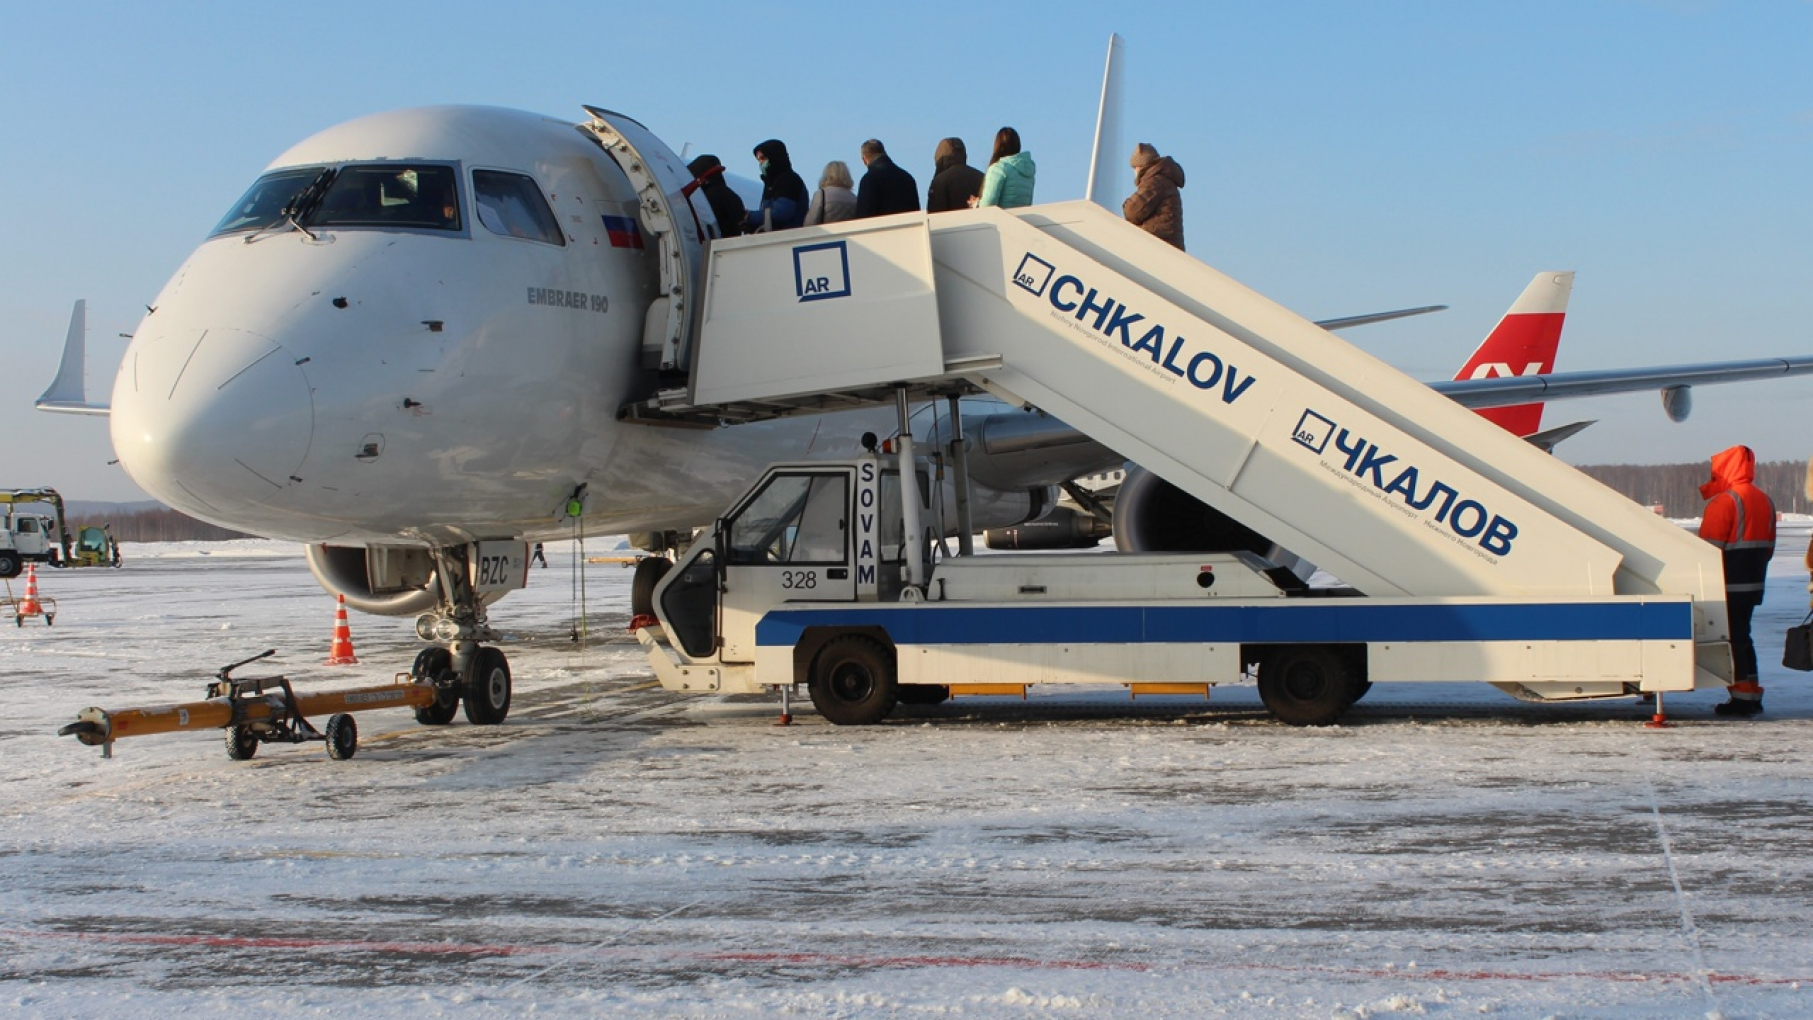 Прямые авиарейсы могут запустить в Нижний Новгород из Ярославля